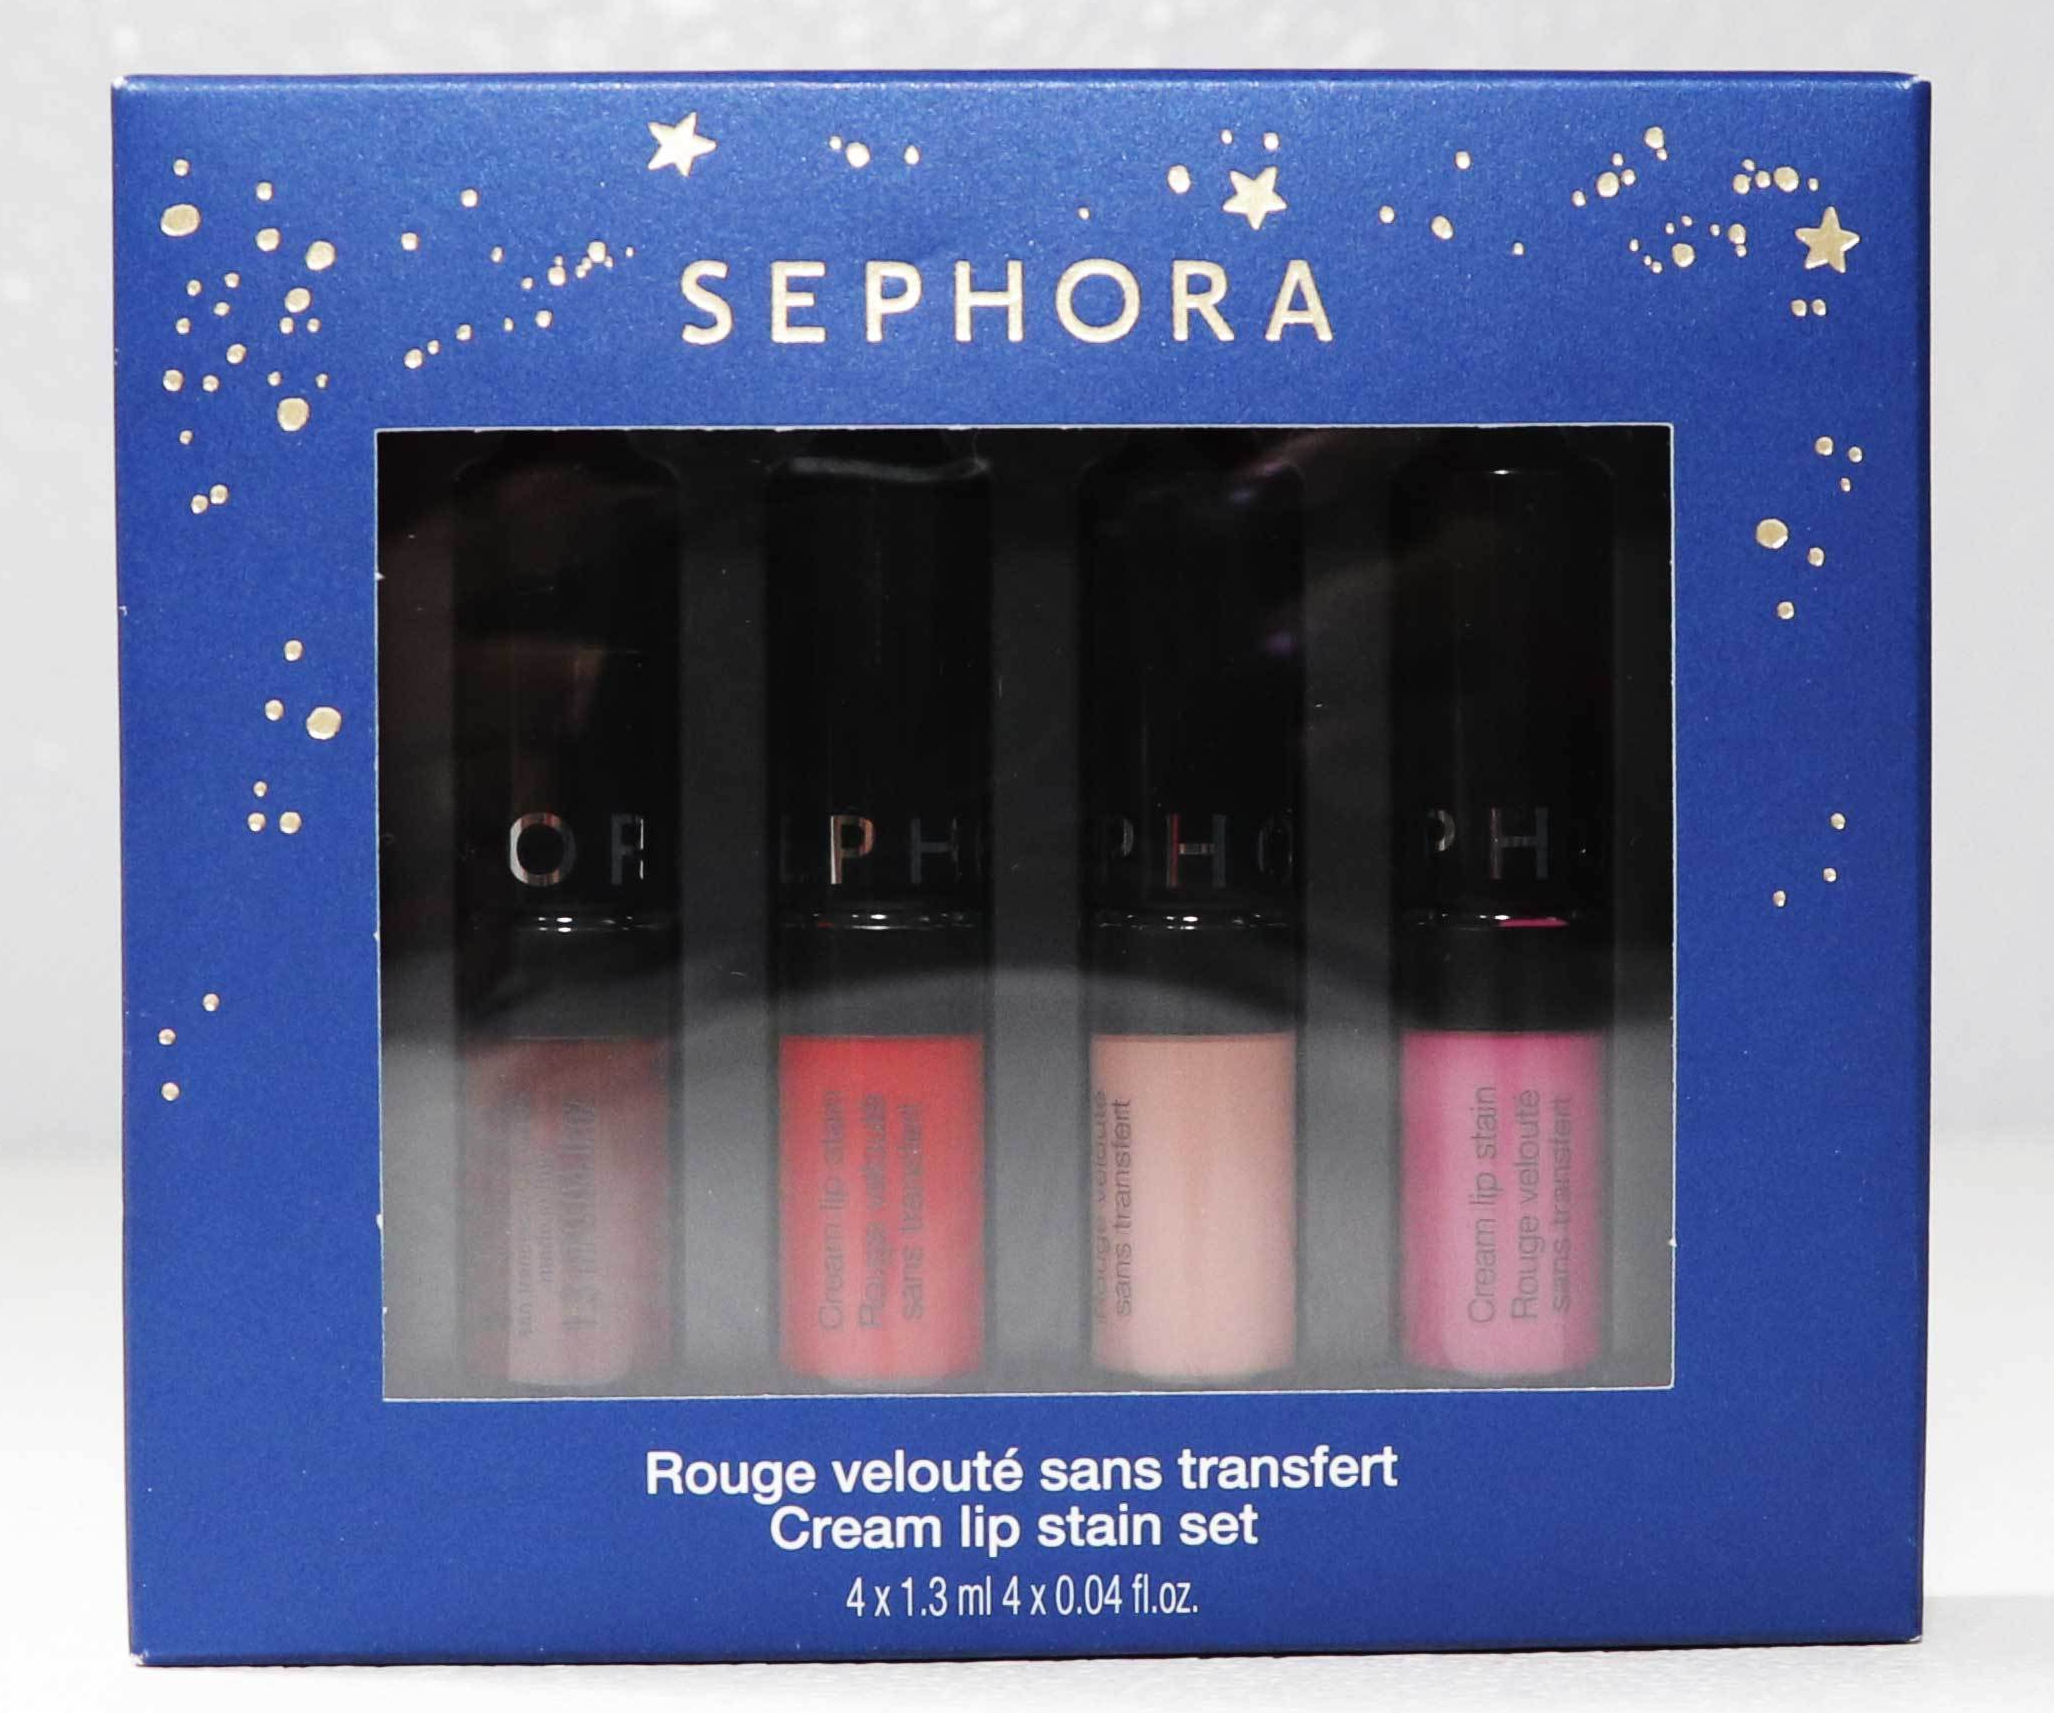 Sephora Cream Lip Stain Set